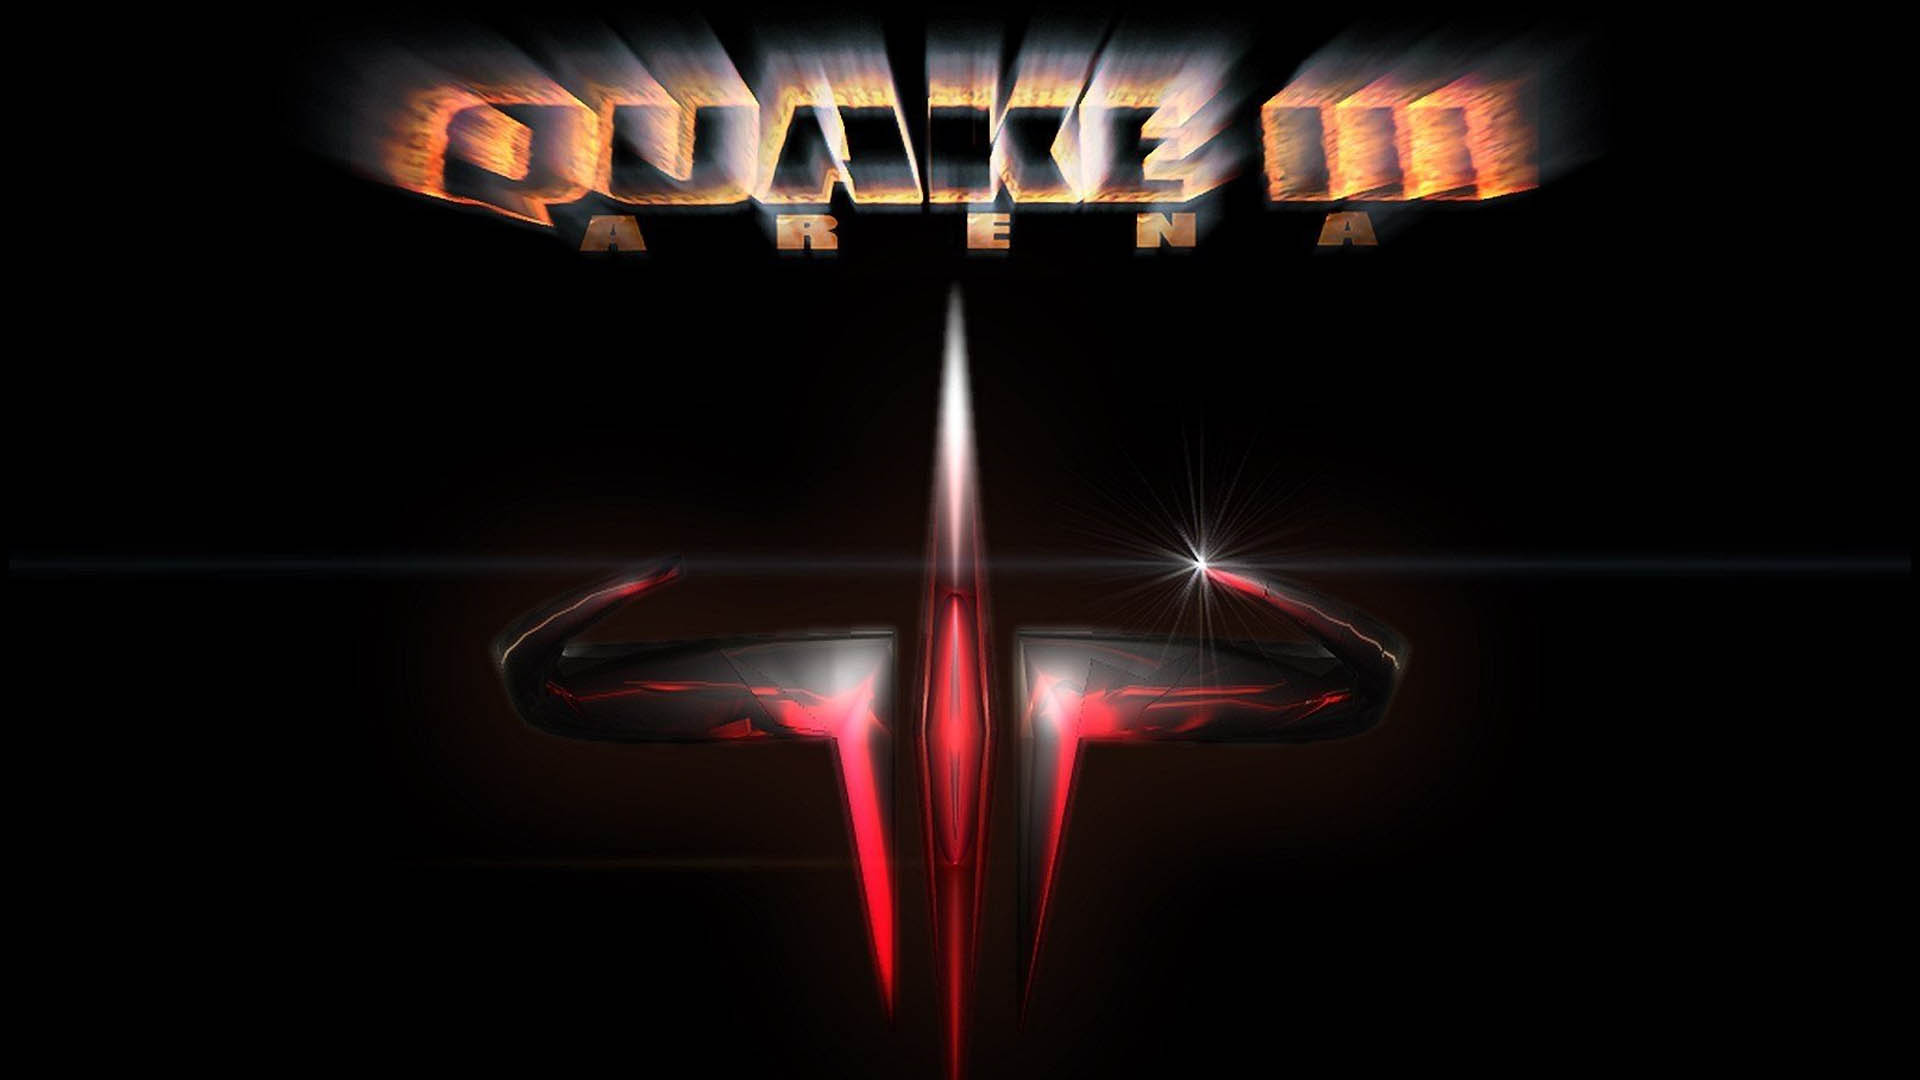 بازی Quake 3 رایگان شد